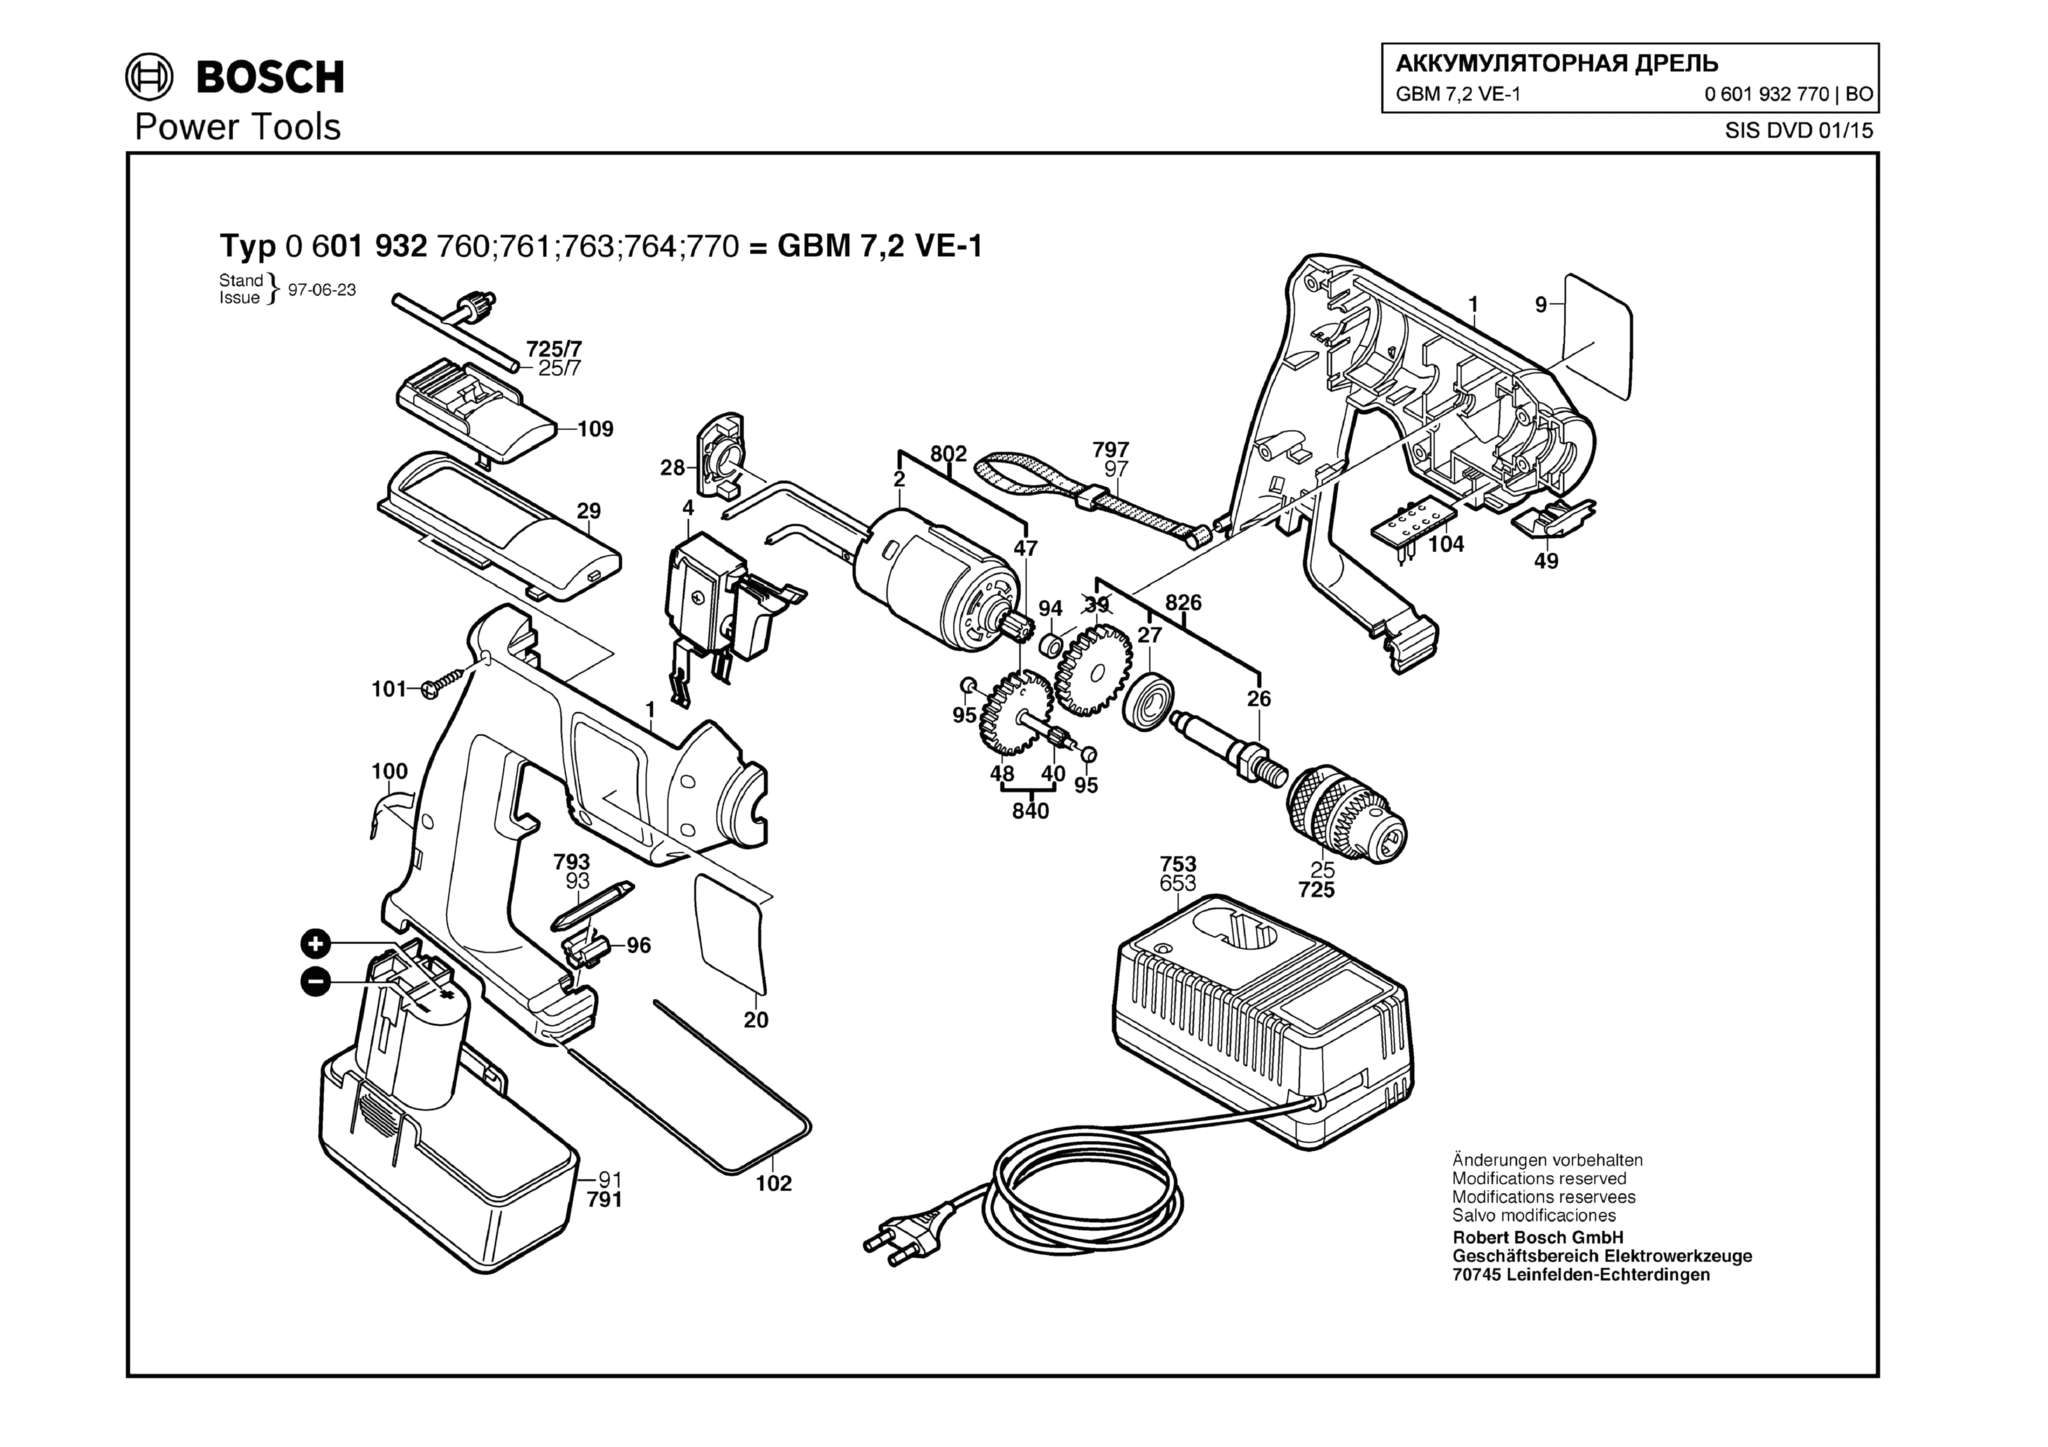 Запчасти, схема и деталировка Bosch GBM 7,2 VE-1 (ТИП 0601932770)